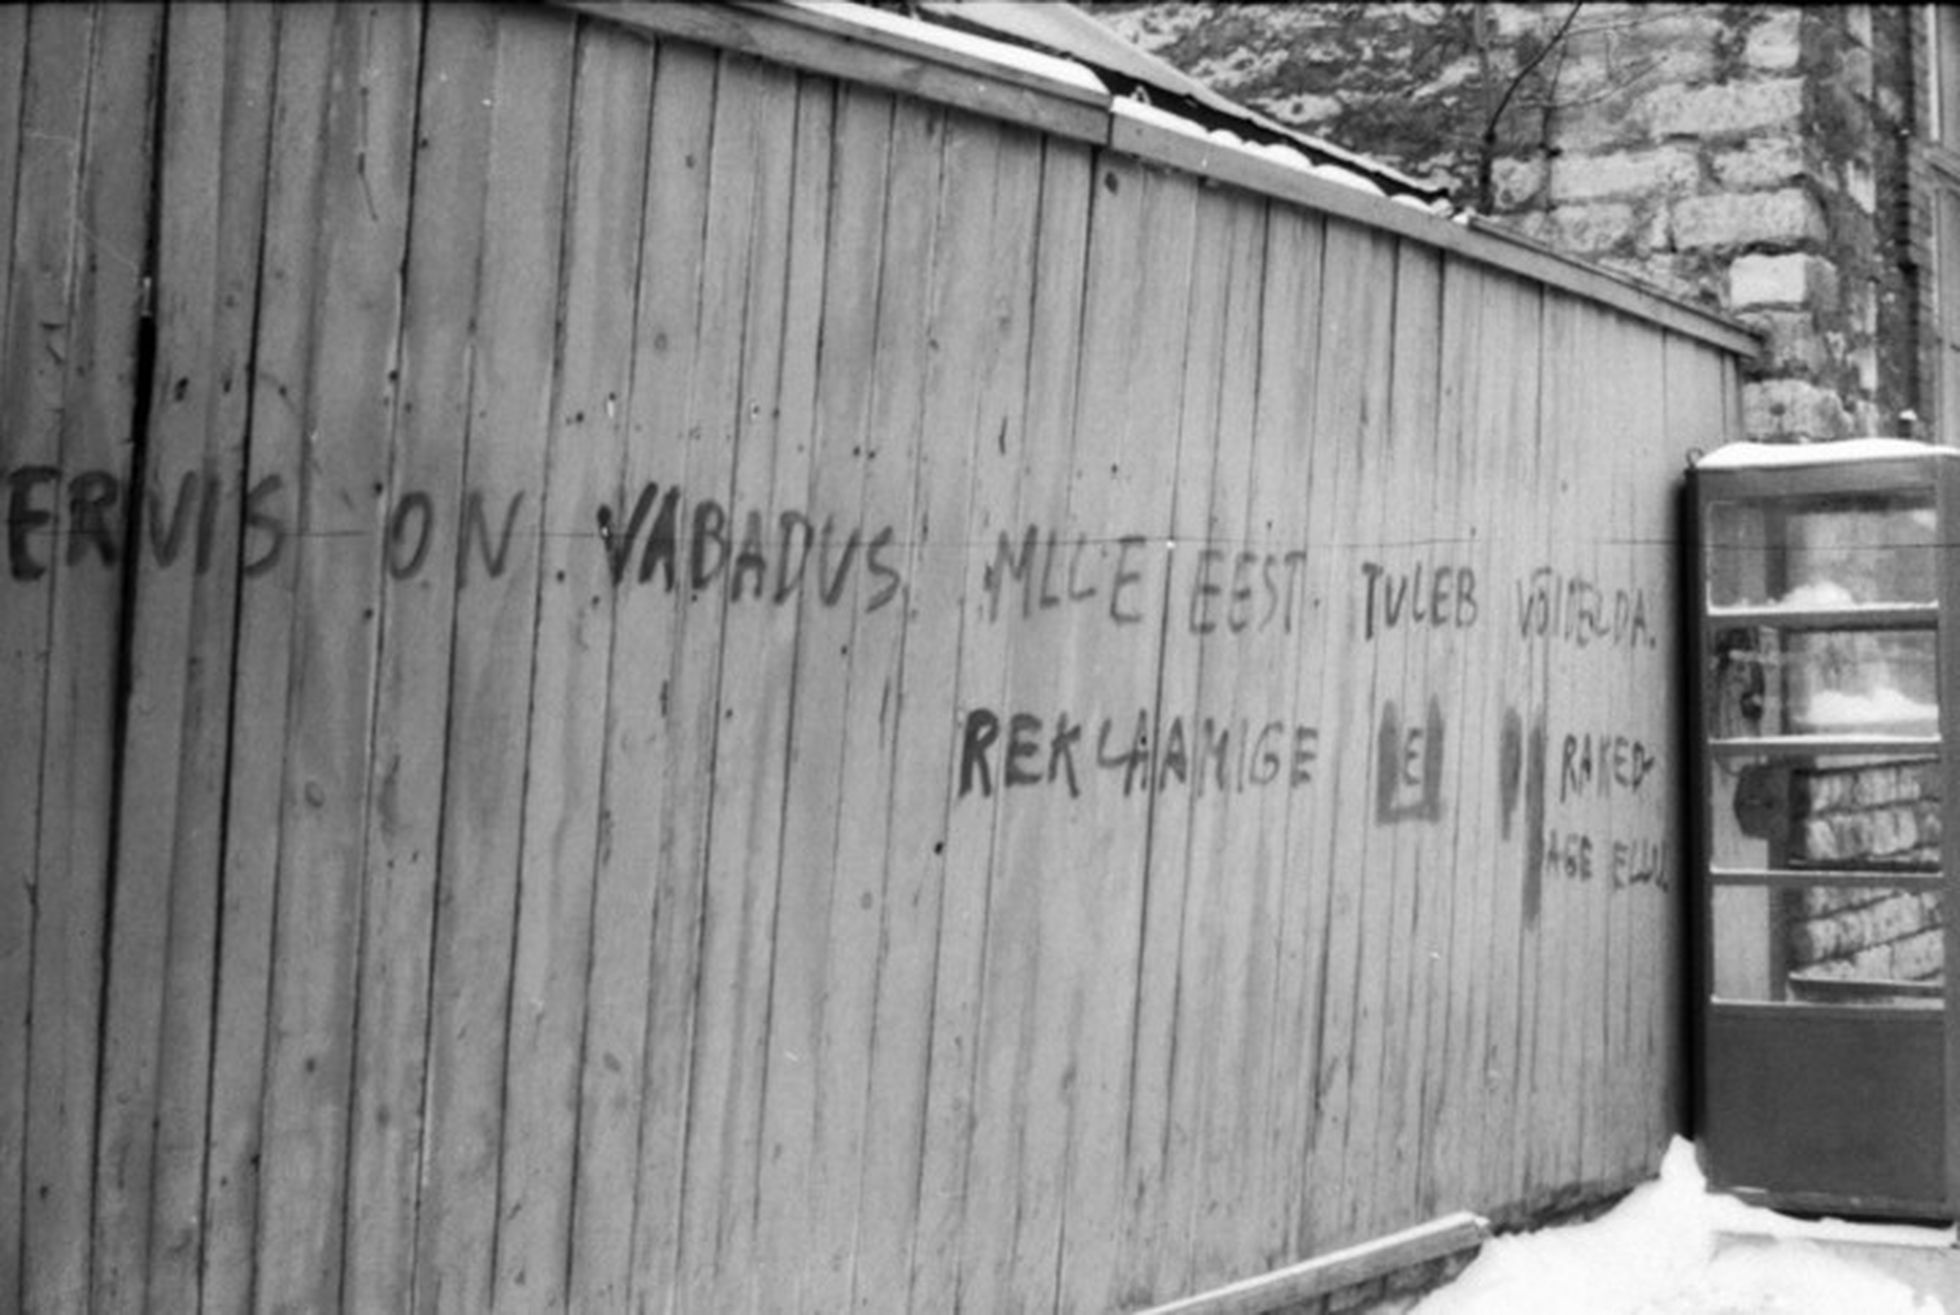 «Tervis on vabadus mille eest tuleb võidelda» Ülo Kiple https://www.folklore.ee/Graffiti/Pildid/0259.jpg